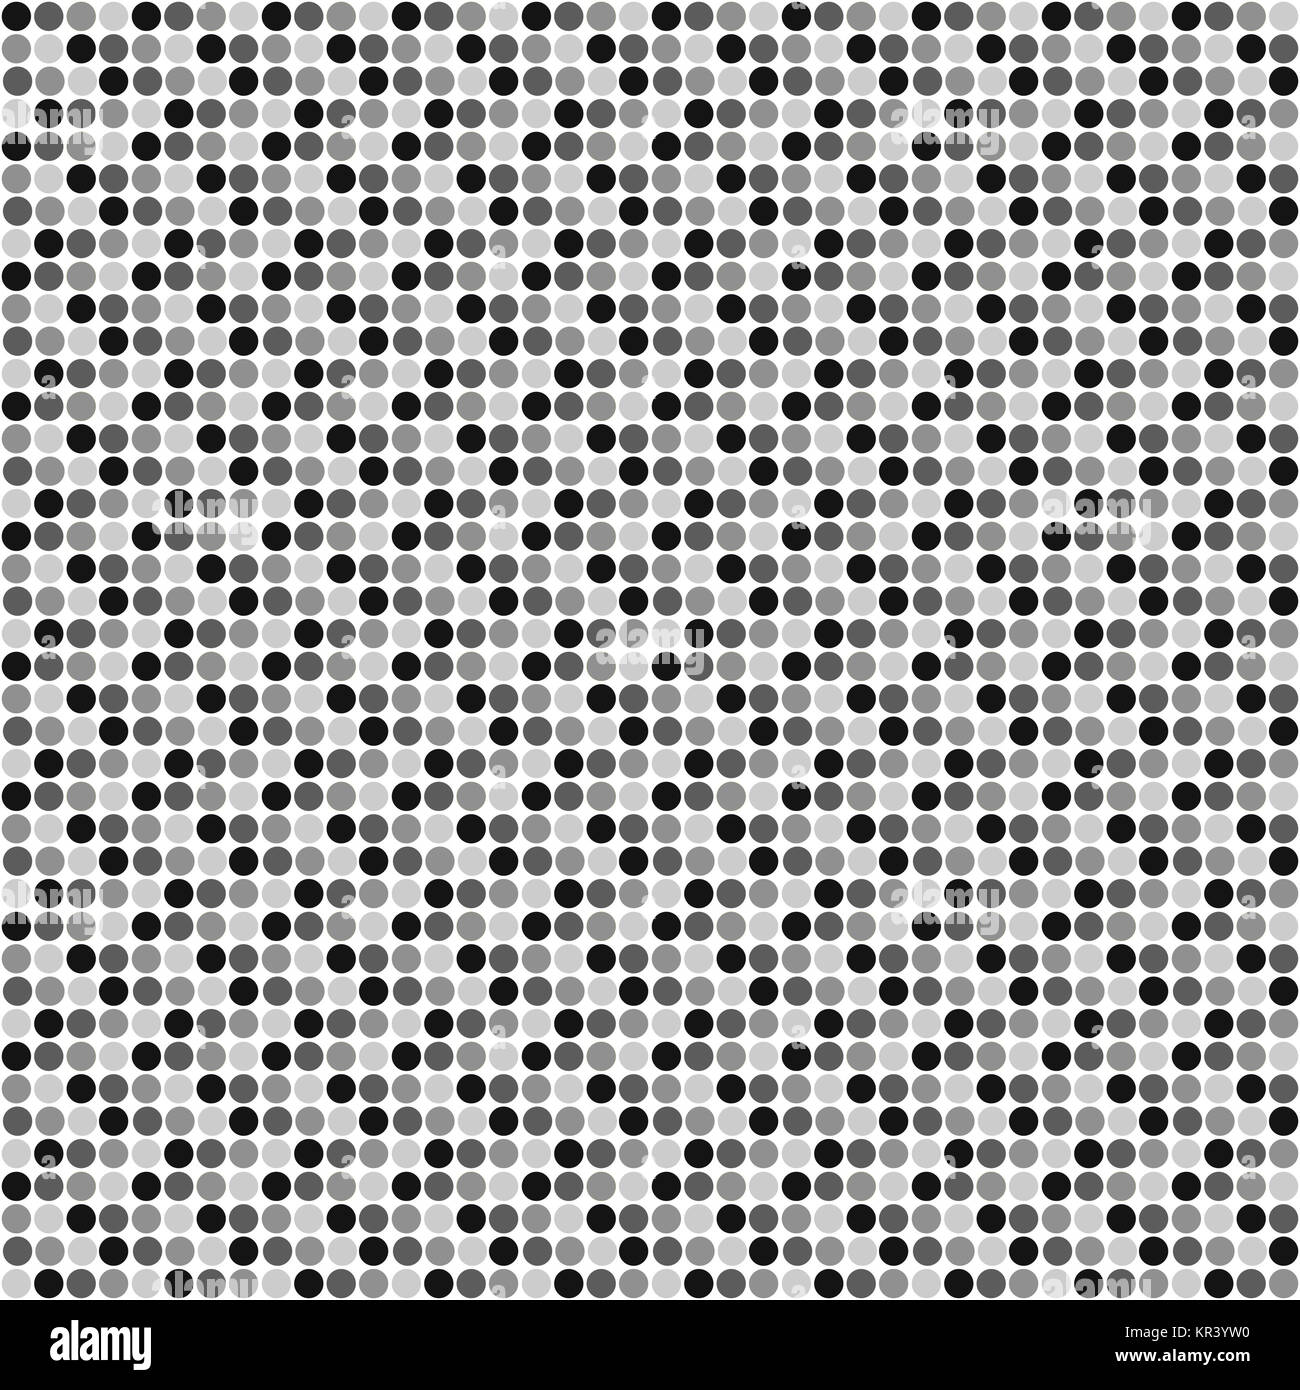 Hintergrund mit weißer Fläche und grau schwarzen Punkten Foto Stock